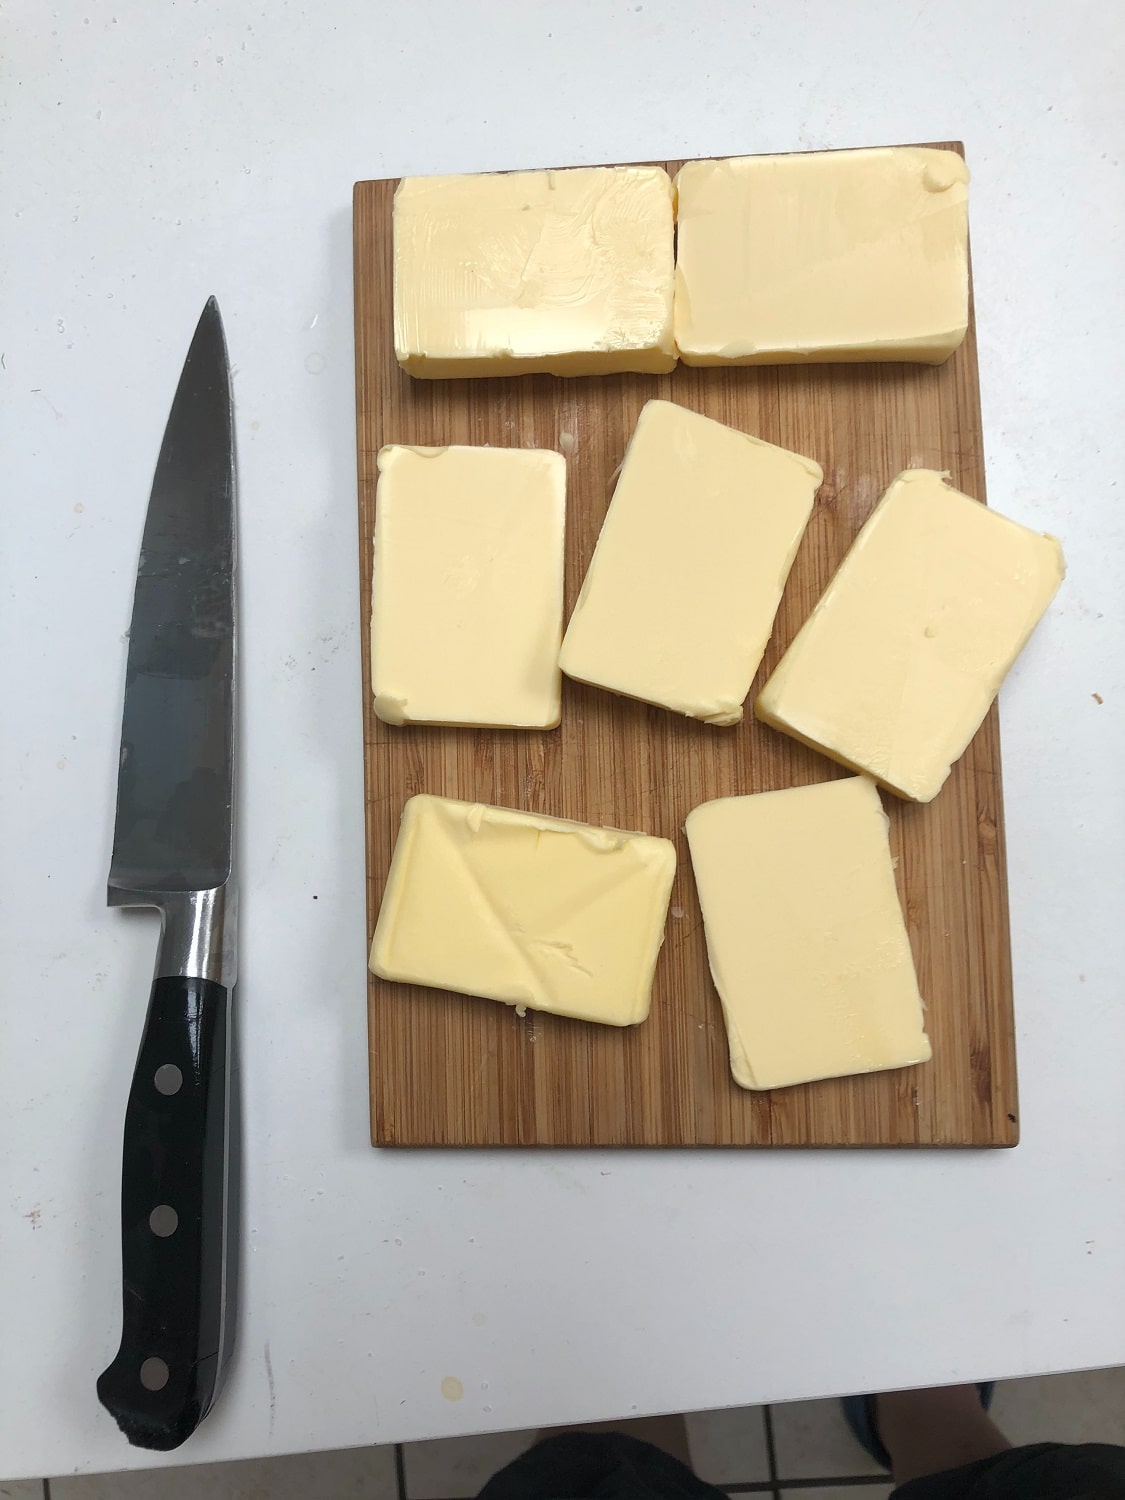 Homemade cheese